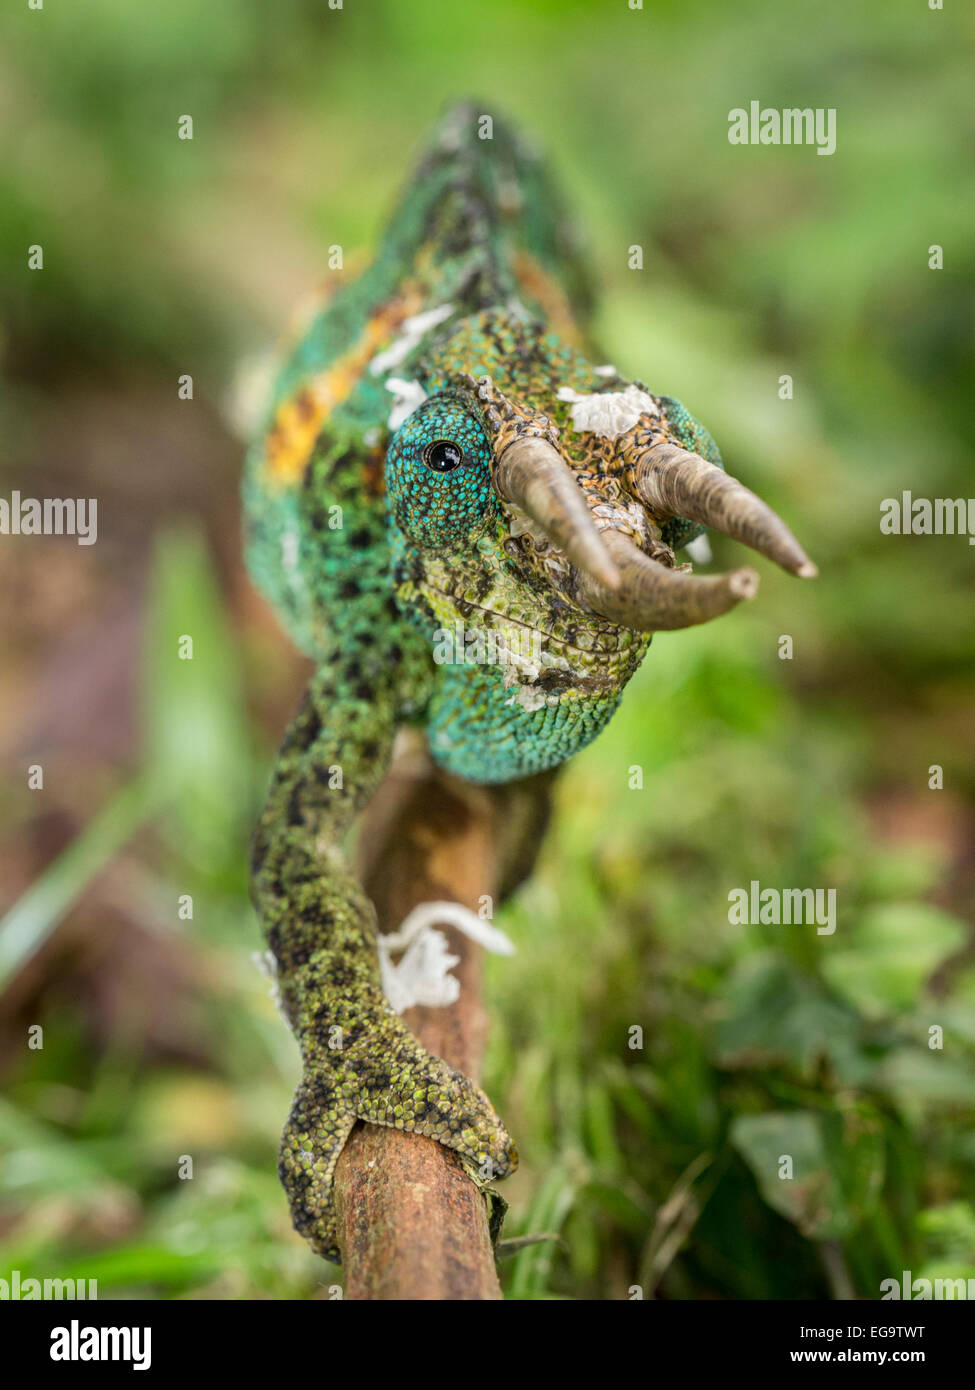 Male Jackson's chameleon (Trioceros jacksonii), Bwindi Impenetrable Forest National Park, Uganda Stock Photo